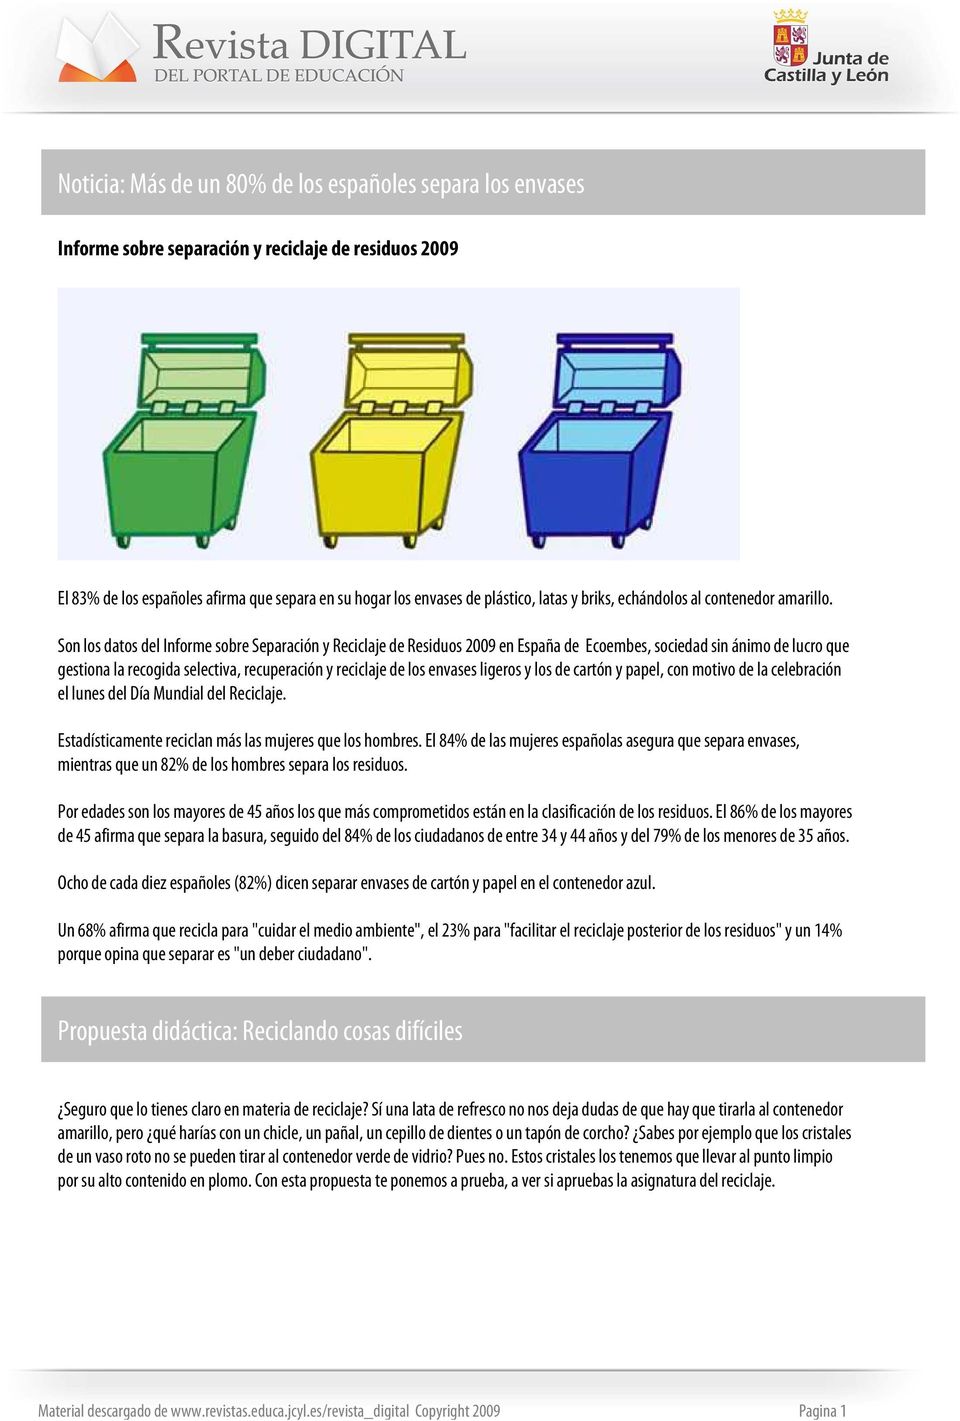 Son los datos del Informe sobre Separación y Reciclaje de Residuos 2009 en España de Ecoembes, sociedad sin ánimo de lucro que gestiona la recogida selectiva, recuperación y reciclaje de los envases